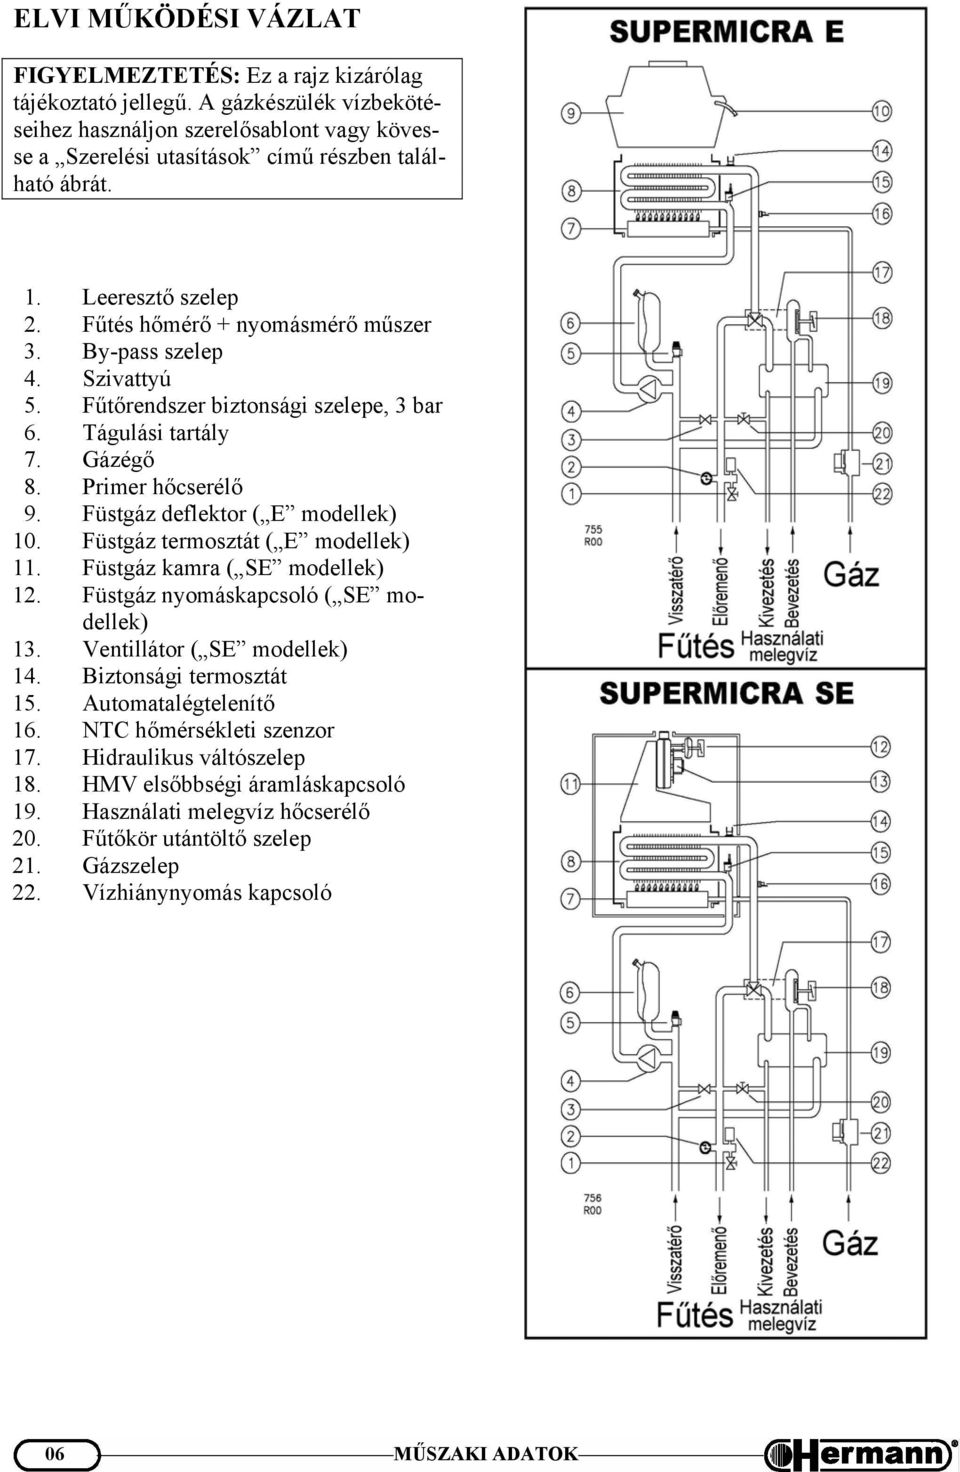 Füstgáz deflektor ( E modellek) 10. Füstgáz termosztát ( E modellek) 11. Füstgáz kamra ( SE modellek) 12. Füstgáz nyomáskapcsoló ( SE modellek) 13. Ventillátor ( SE modellek) 14.